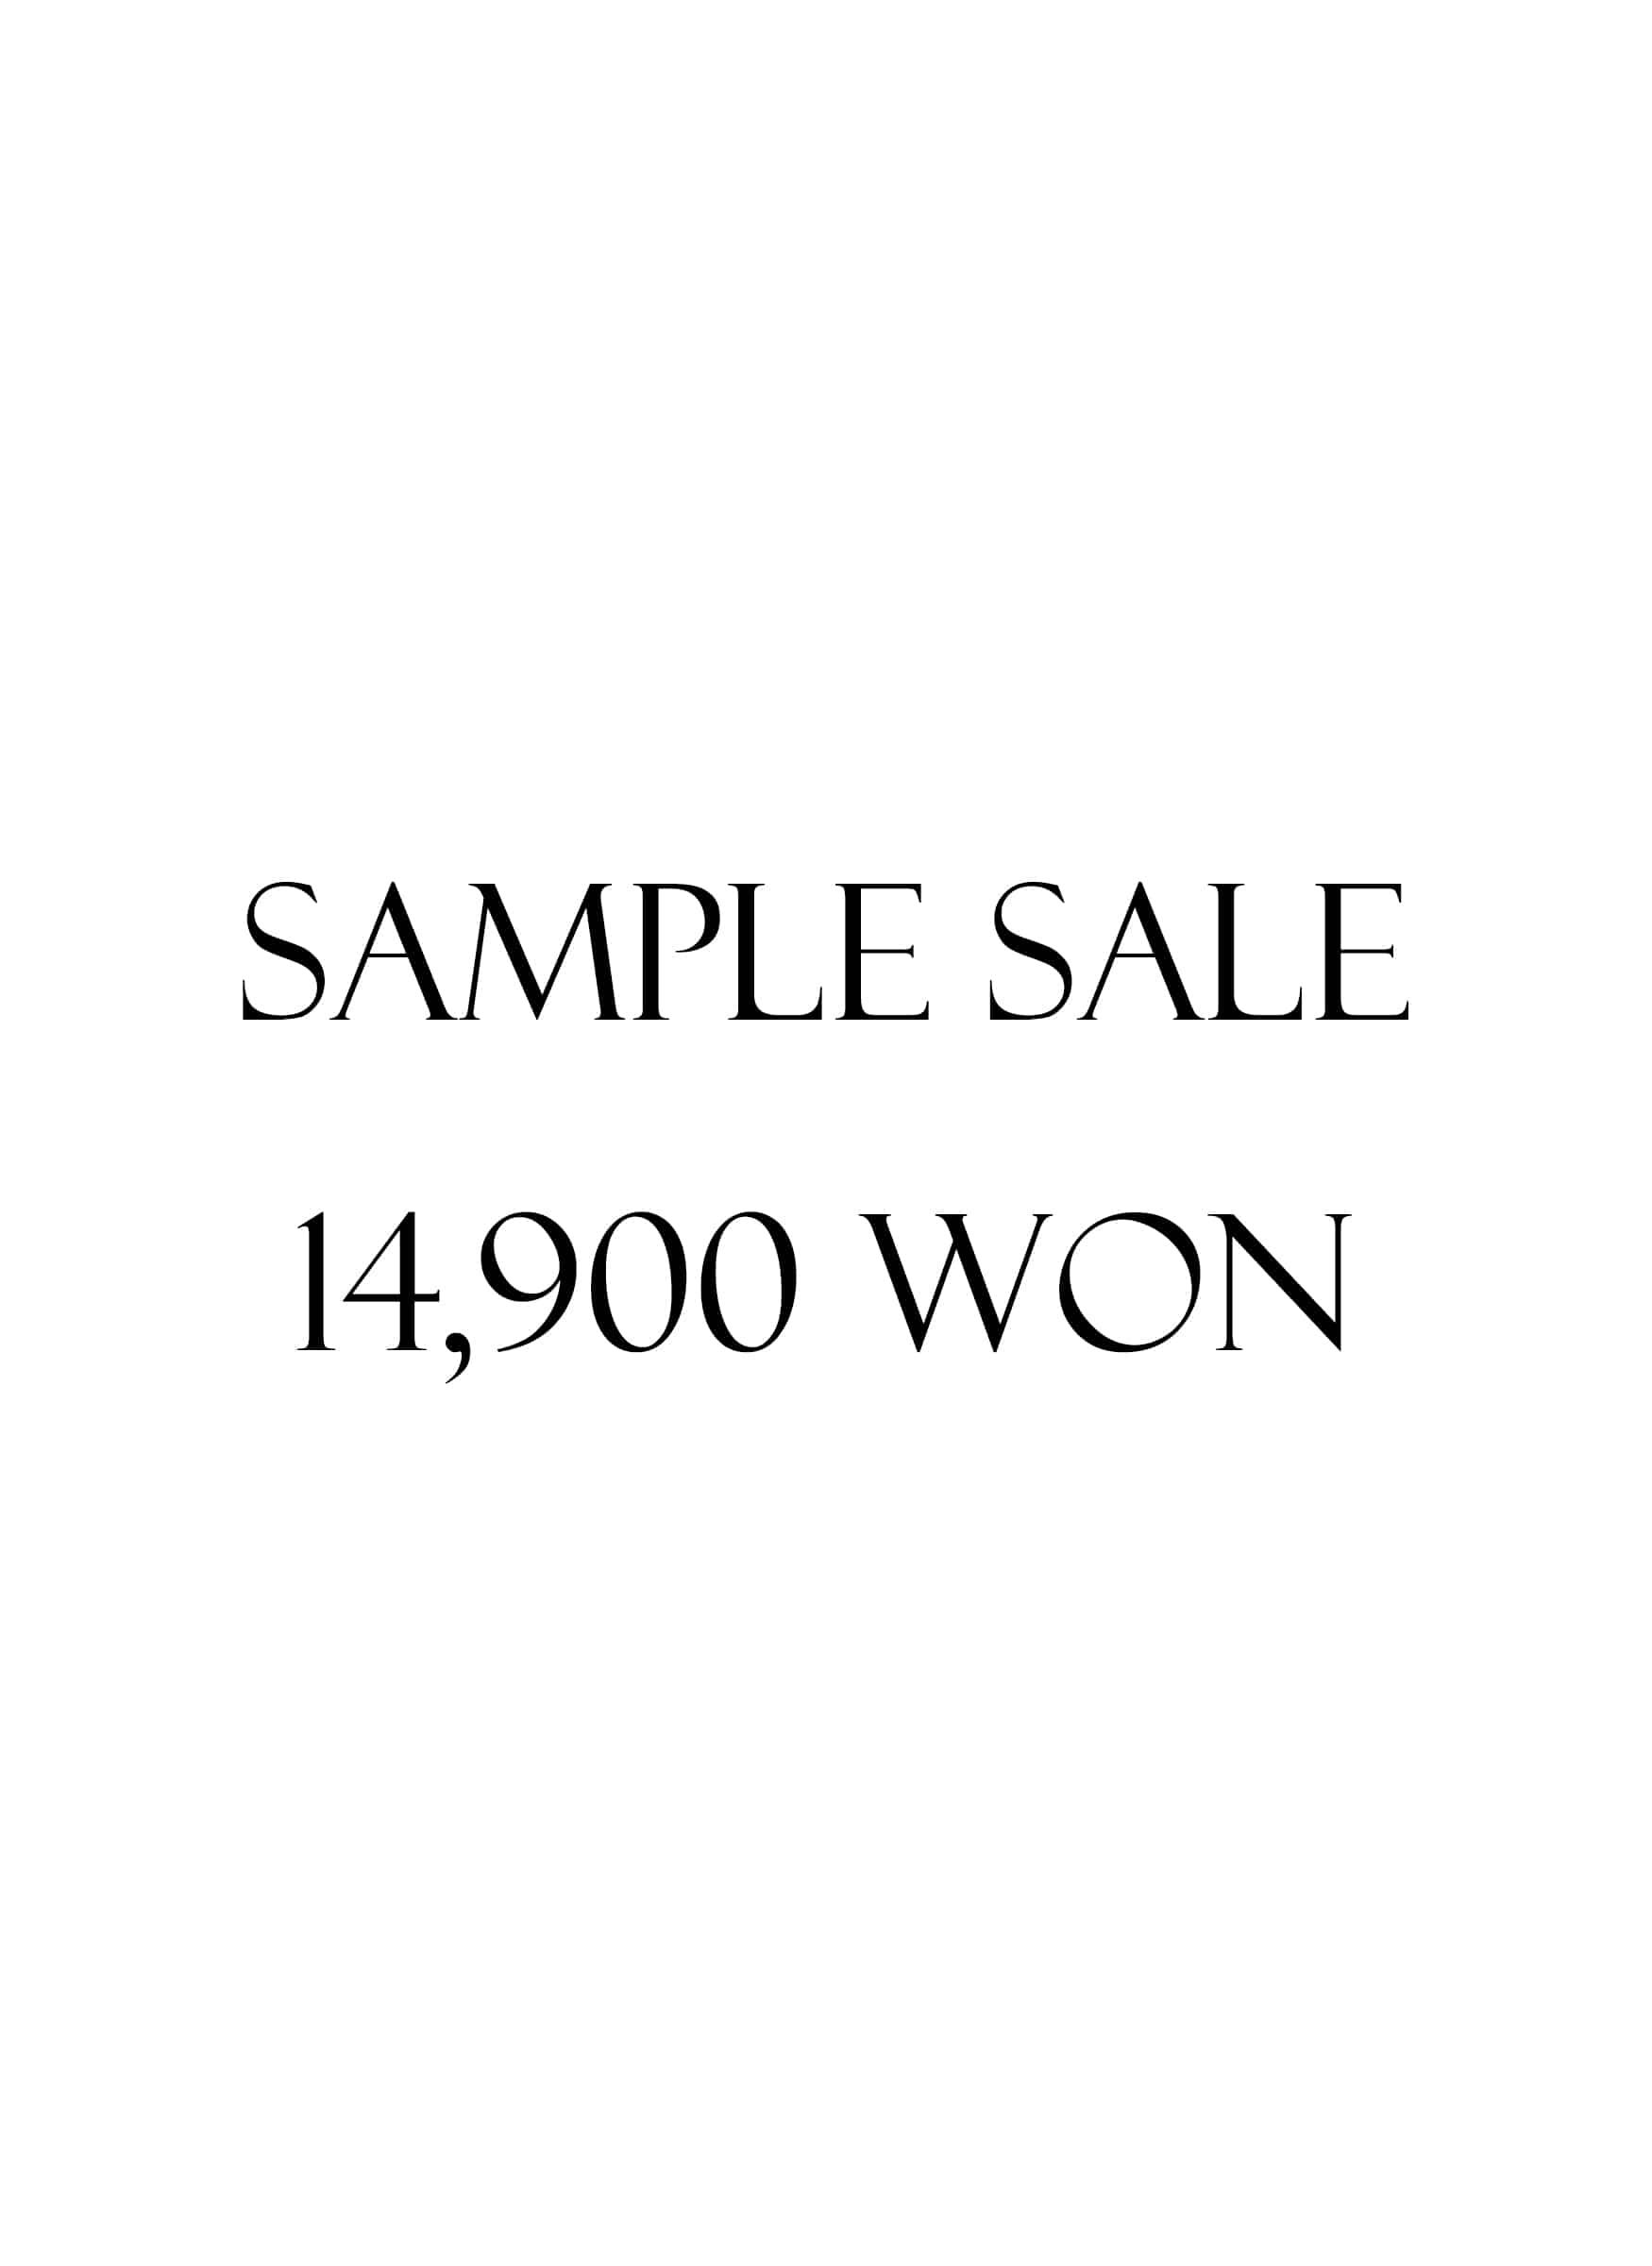 Sample Sale (\14,900)